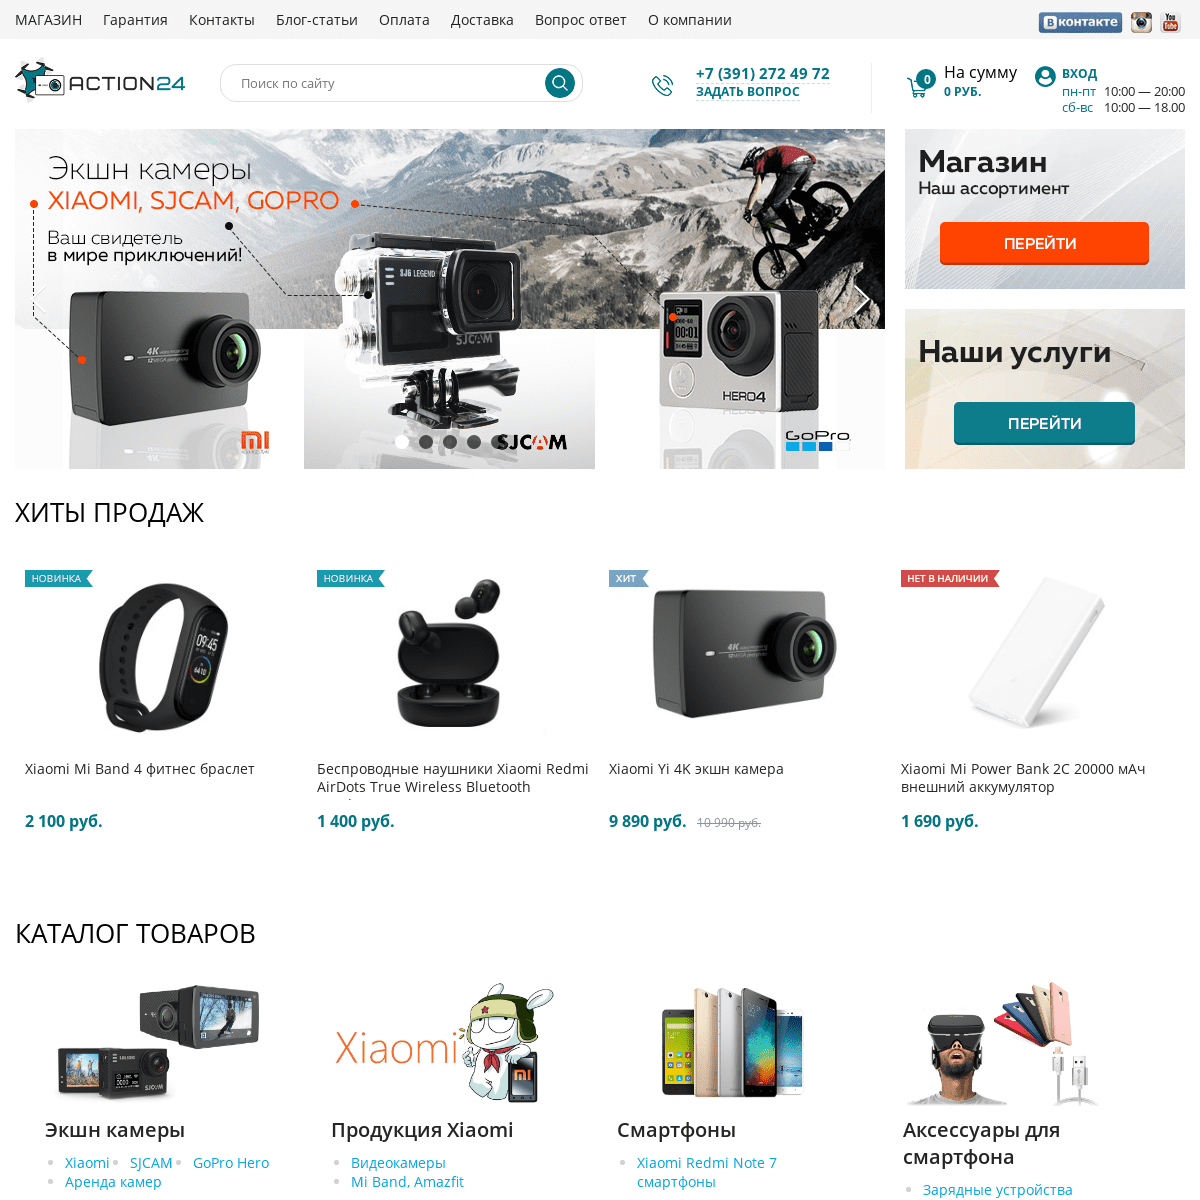 Купить экшн камеру в Красноярске - интернет магазин action24.camera Продажа смартфонов, квадрокоптеров, продукции Xiaomi